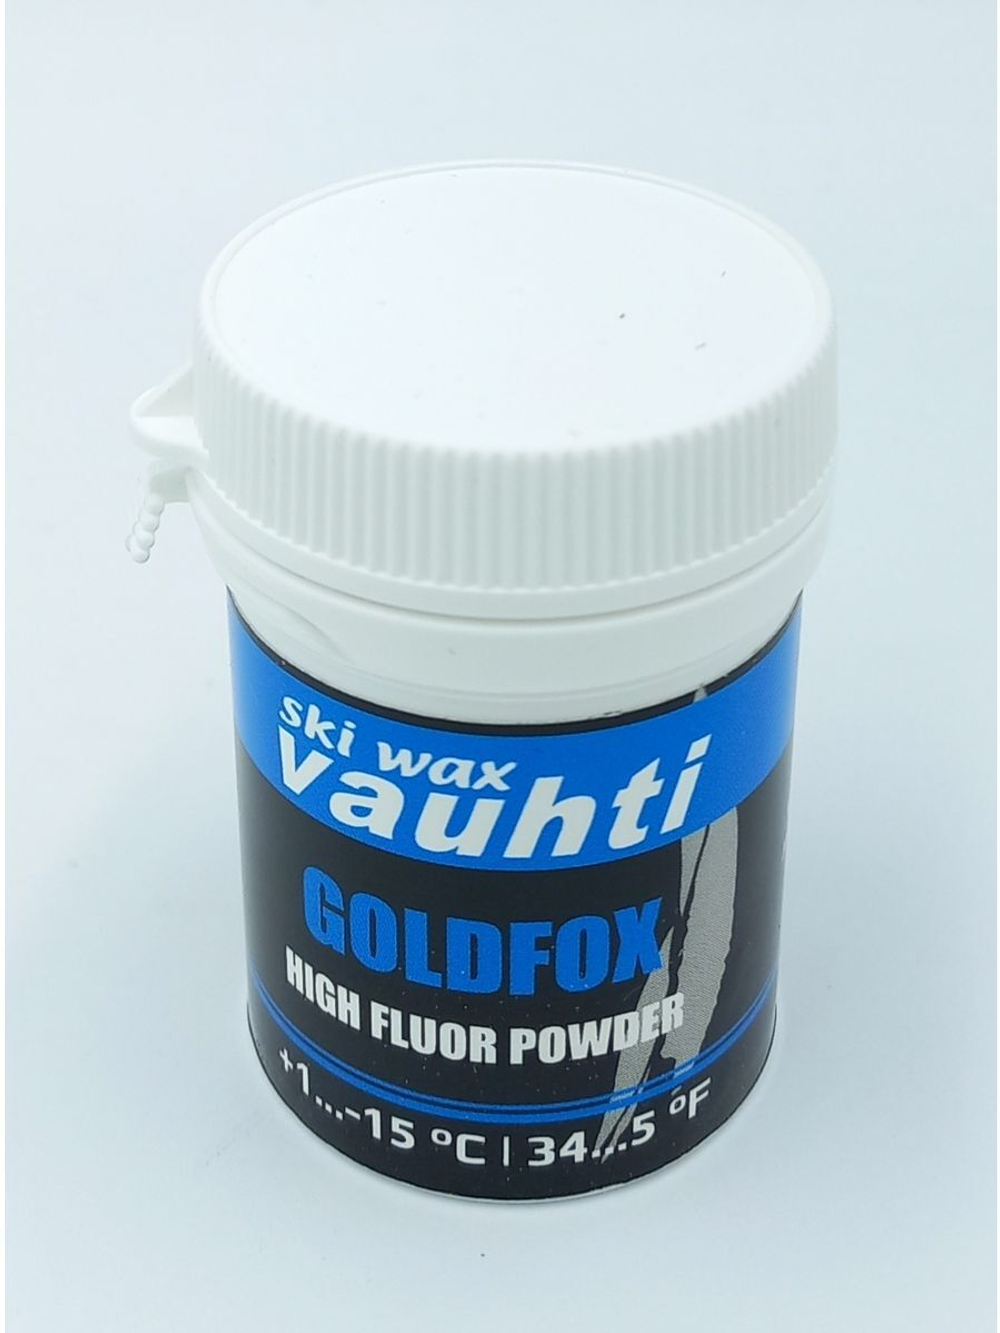 Порошок Vauhti GOLDFOX (+1...-15 °C) высокофторовый, 30g.